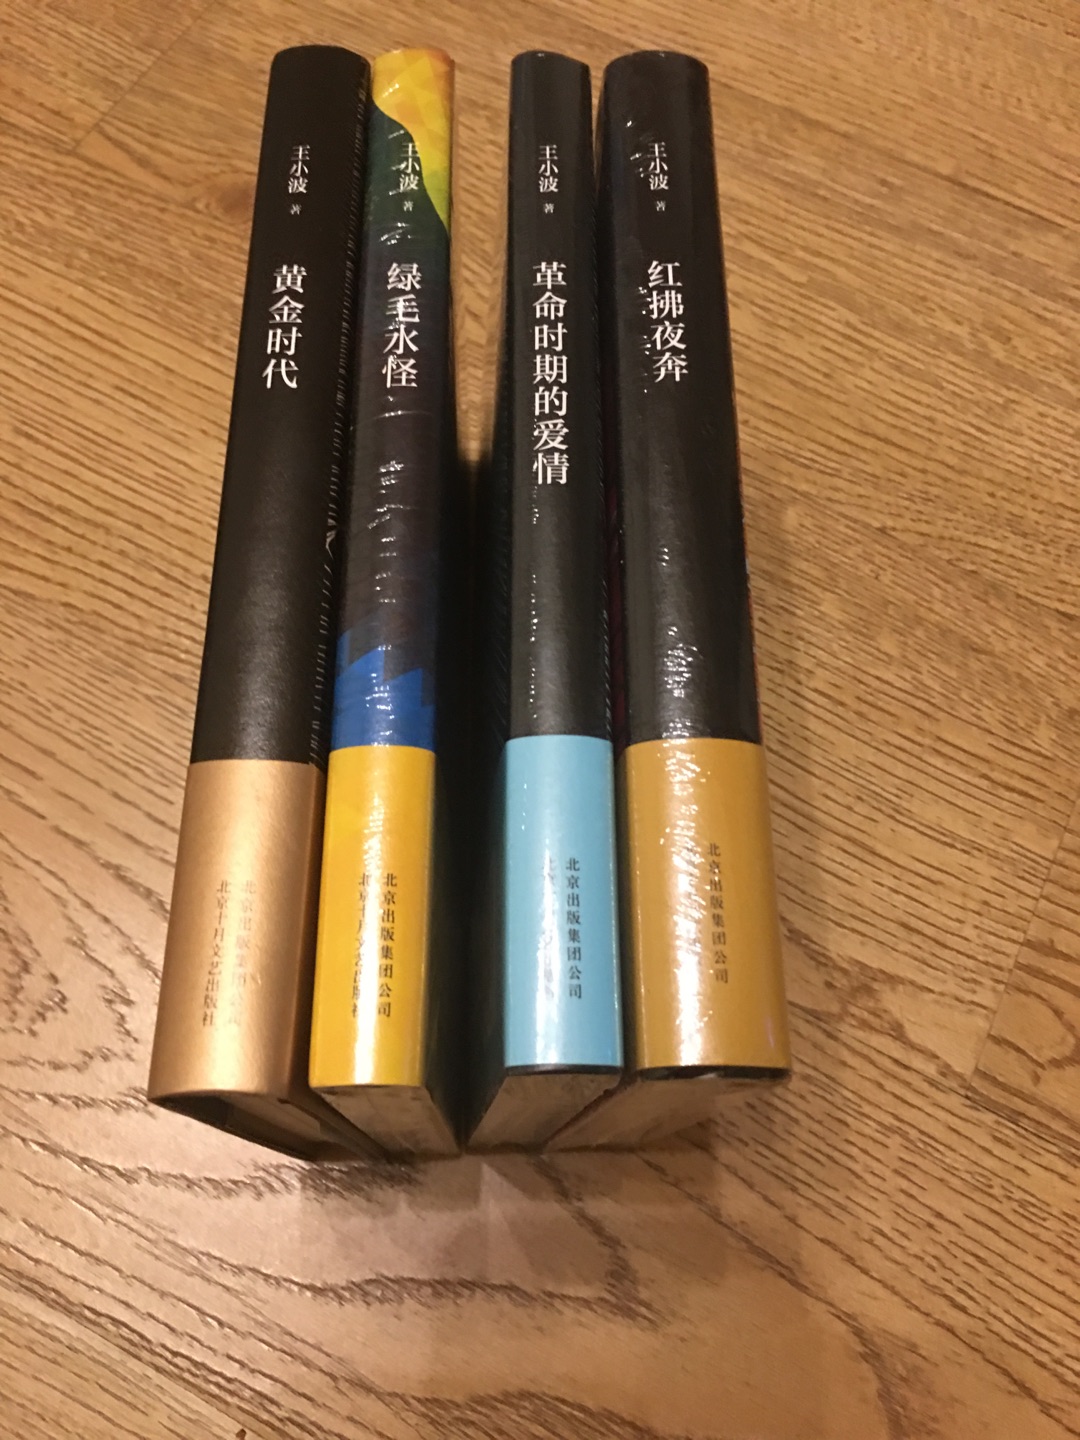 王小波小说代表作，封面设计很有创意。